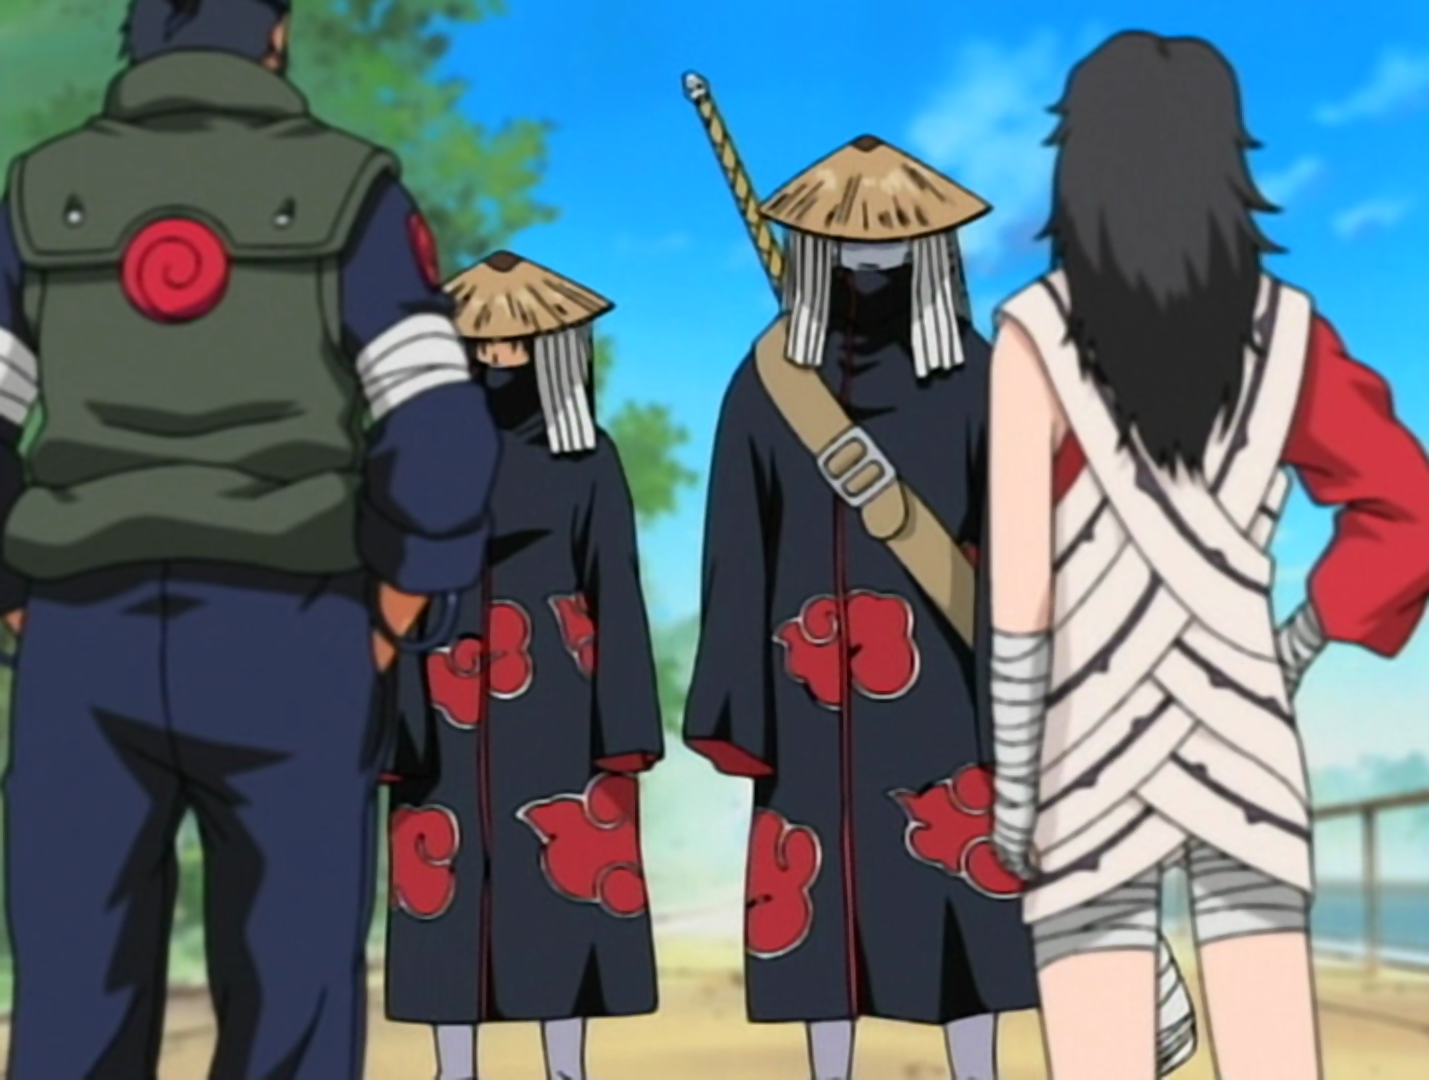 Conheça o significado das nuvens vermelhas da Akatsuki em Naruto Shippuden  - Critical Hits